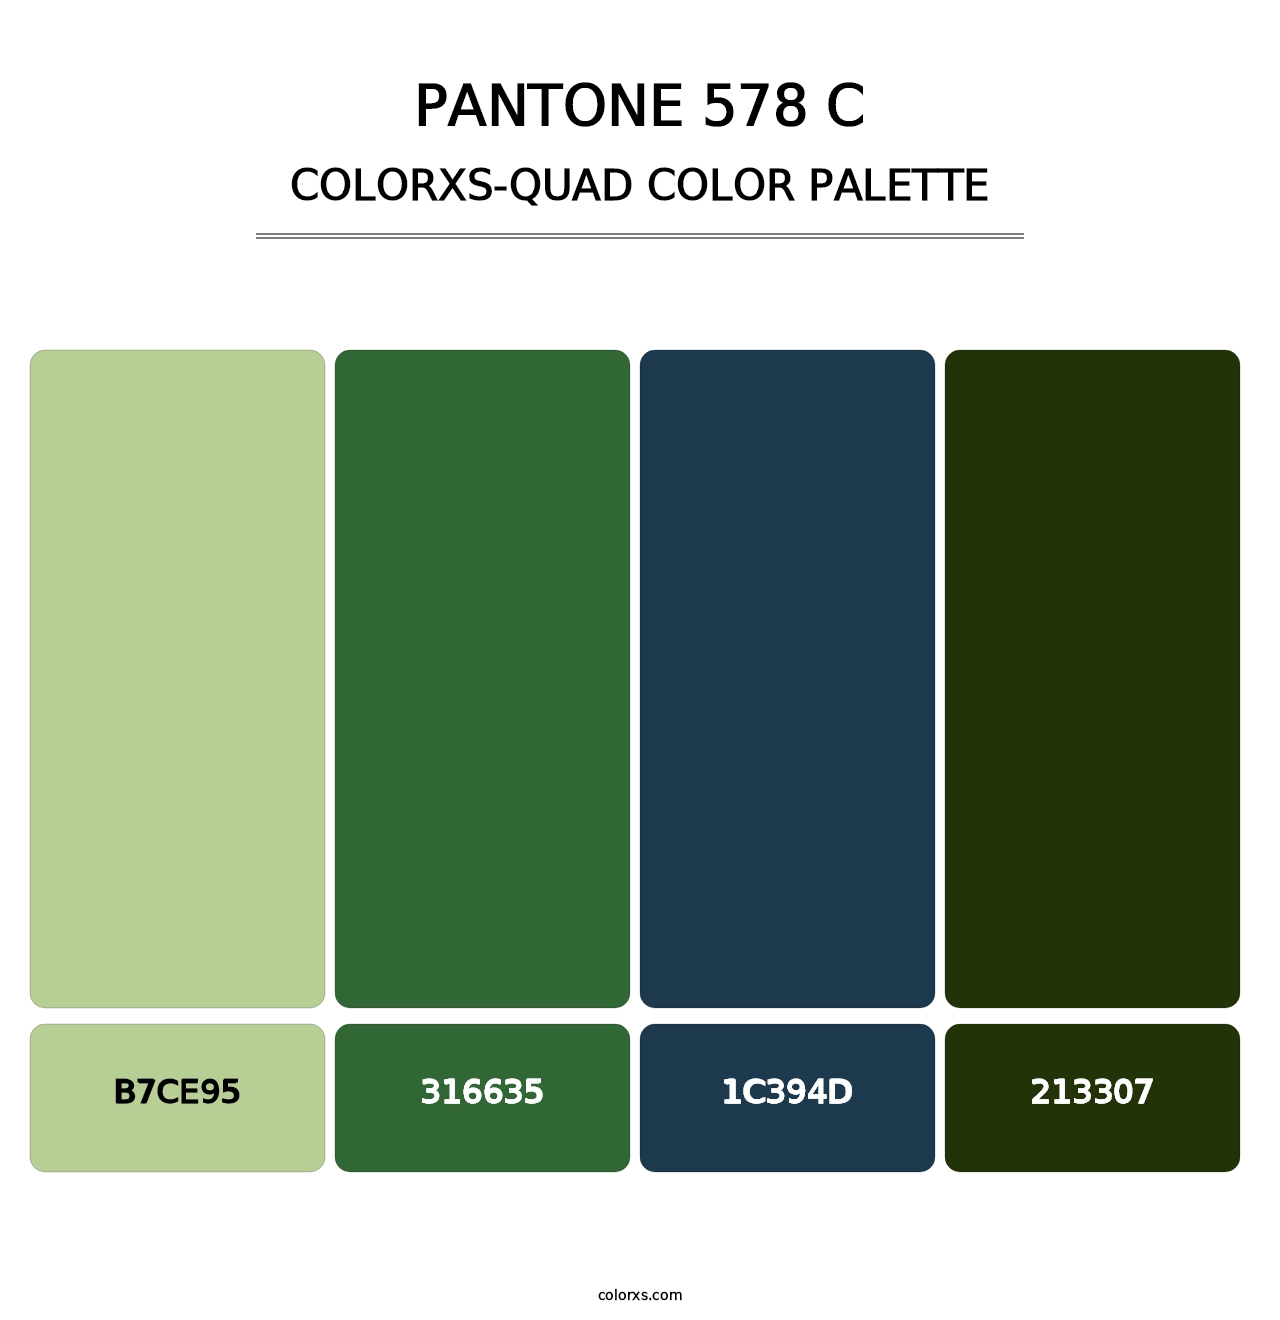 PANTONE 578 C - Colorxs Quad Palette